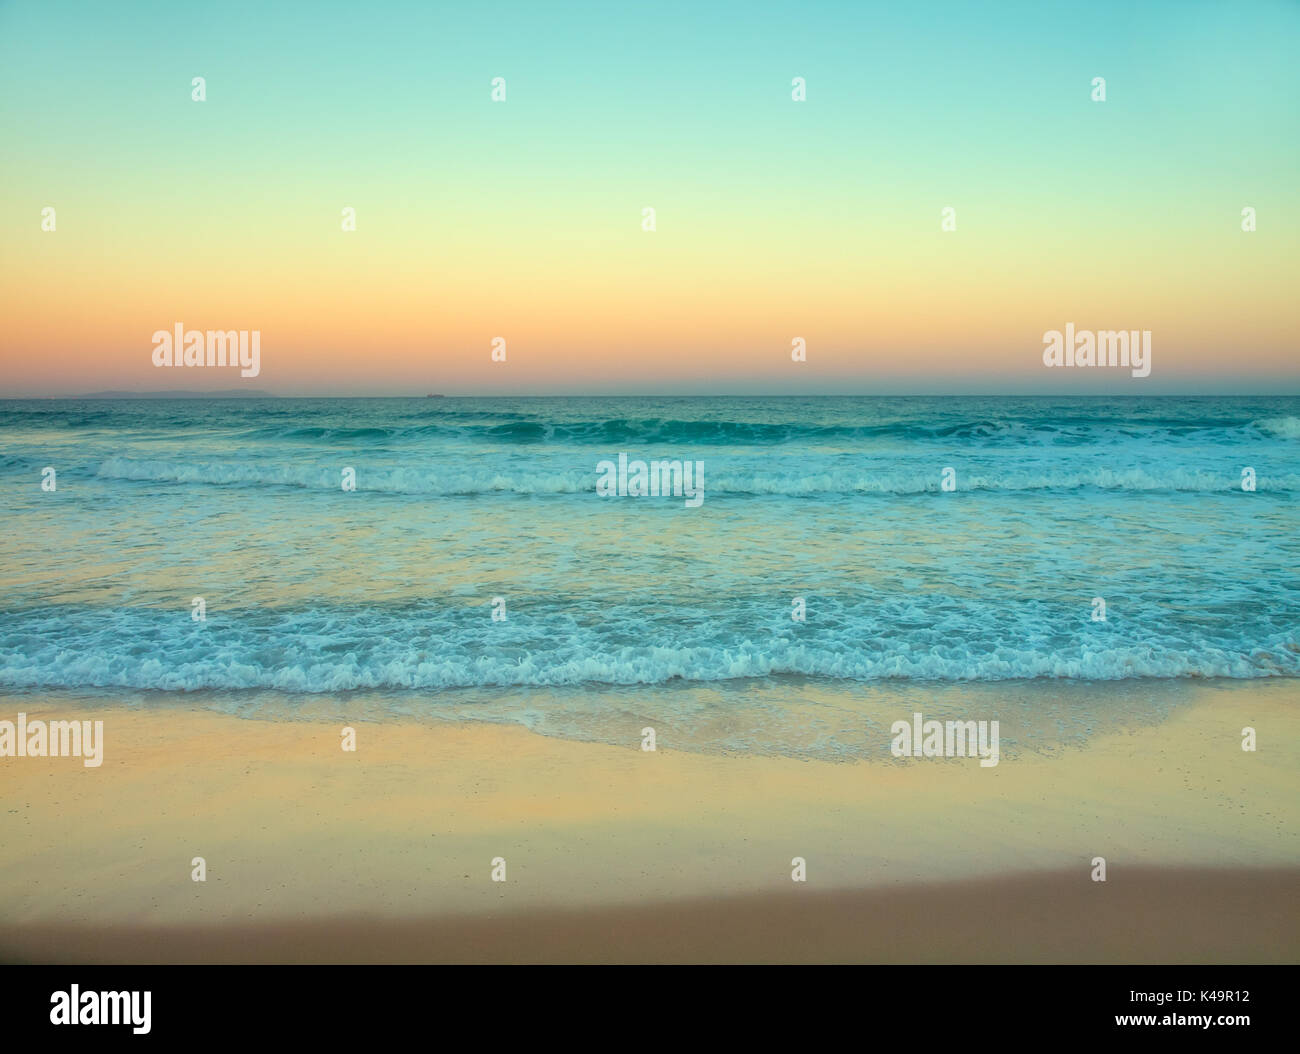 In stile retrò, istante fotocamera foto di stile di una spiaggia durante il Sunrise, Alba Foto Stock